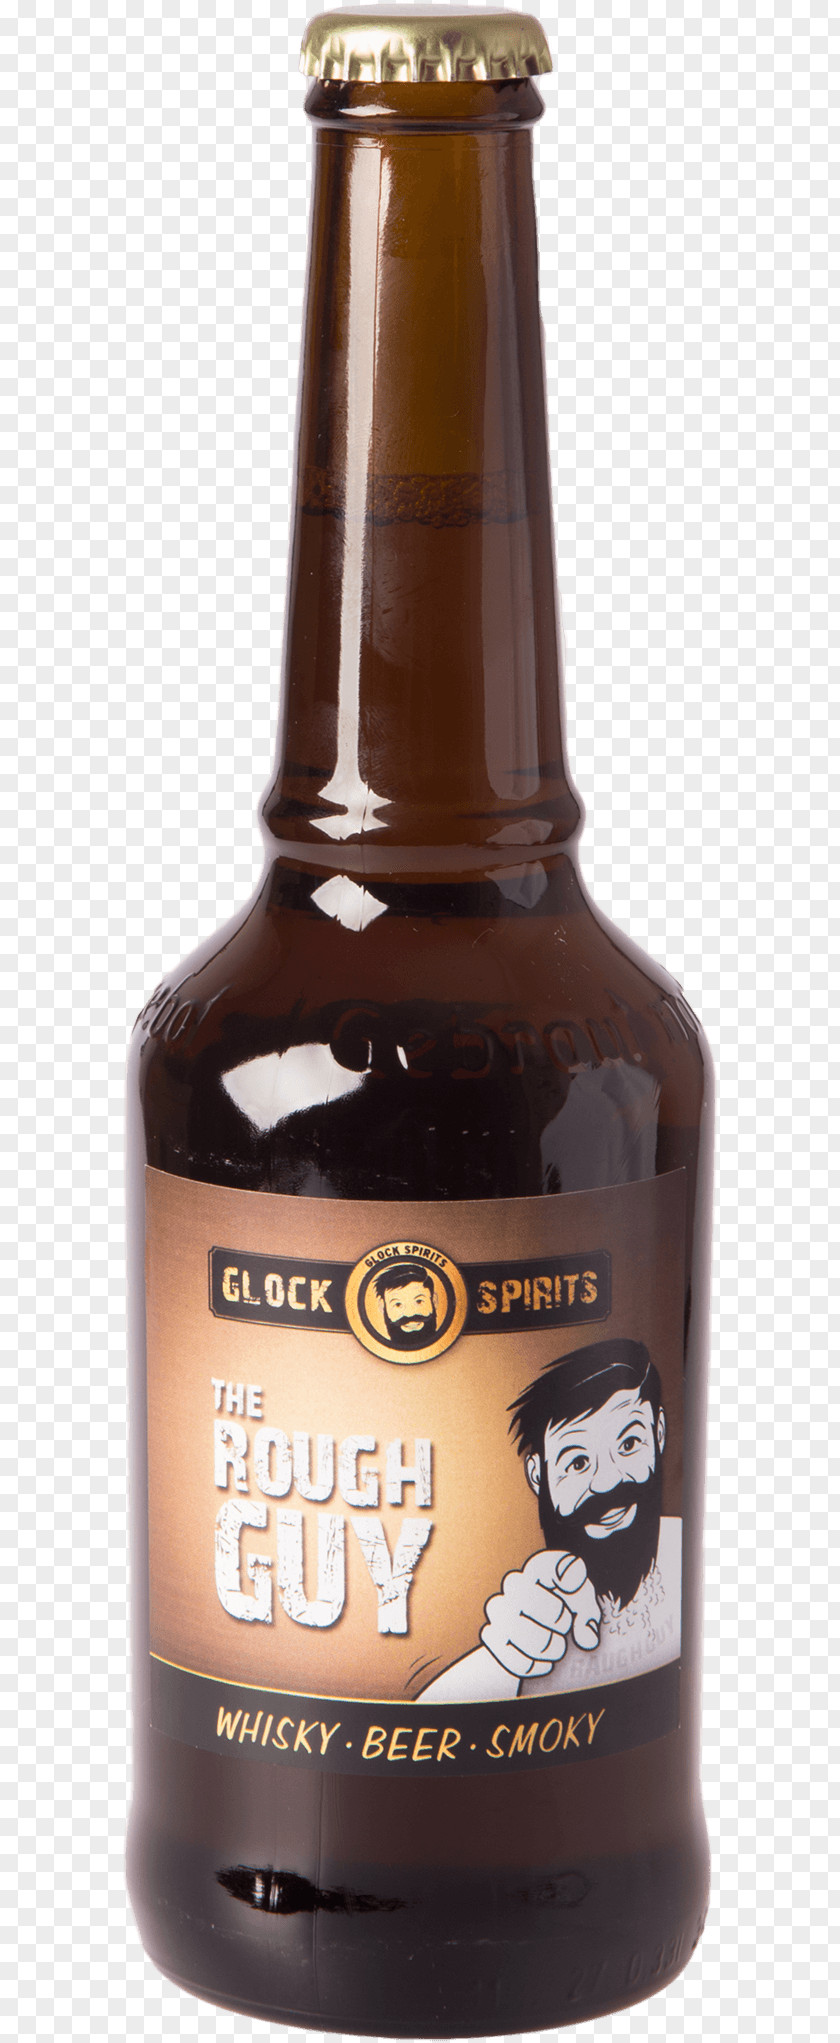 Beer Bottle Distilled Beverage Bell's Brewery Ale PNG